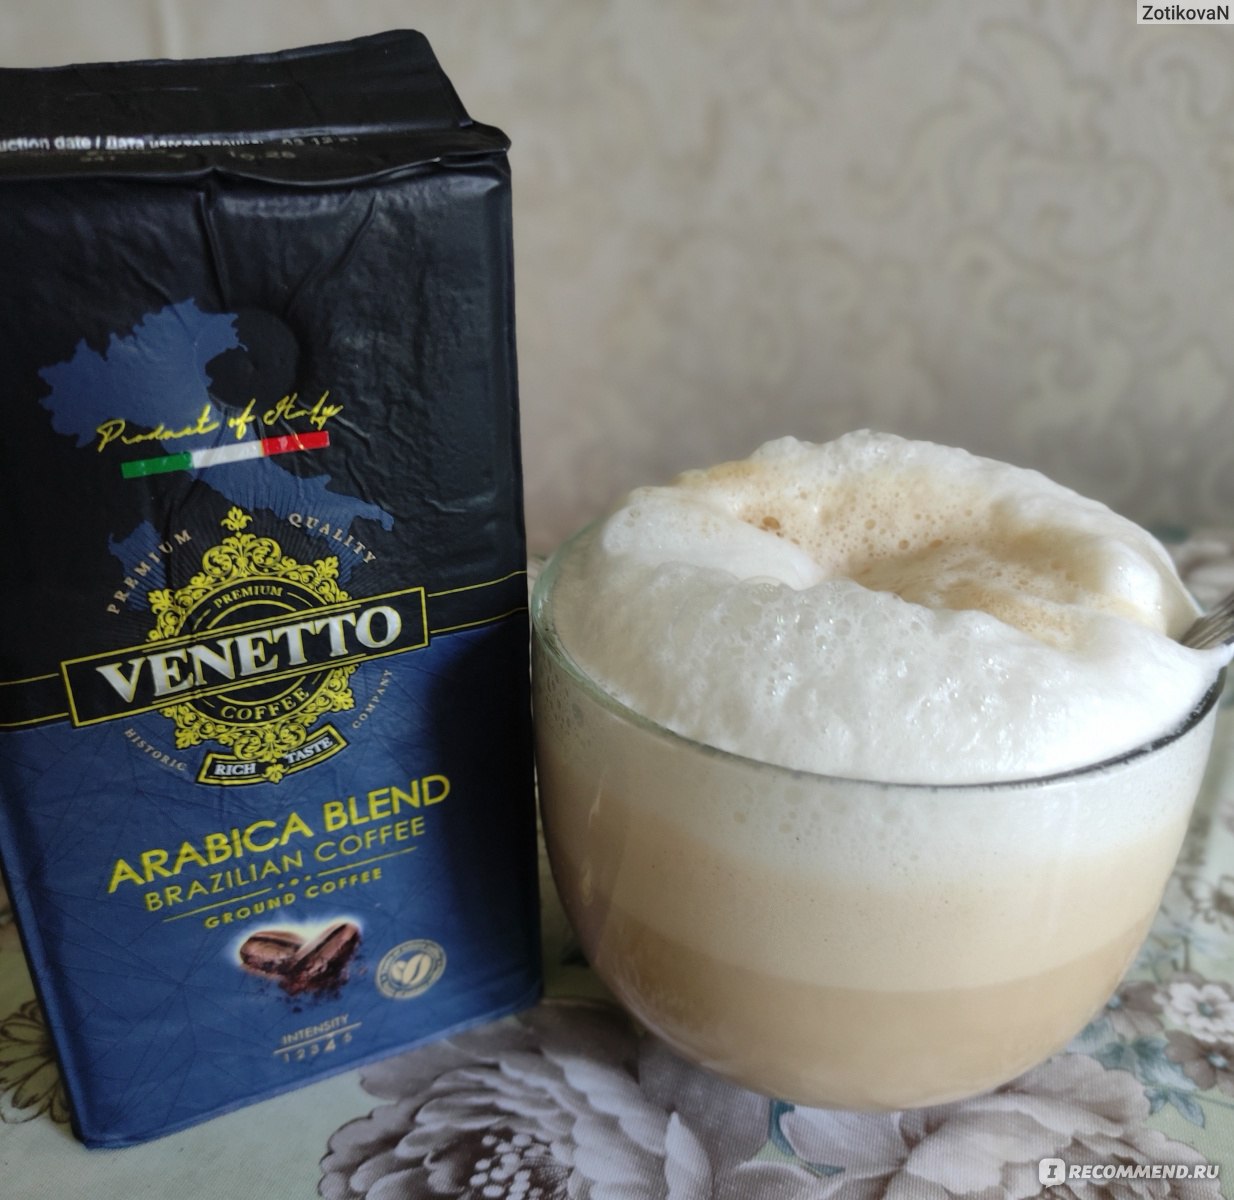 Кофе venetto arabica blend. Venetto кофе молотый. Venetto Arabica Blend. Arabica Blend Brazilian Coffee. Venetto Arabica Brazilian Coffee.